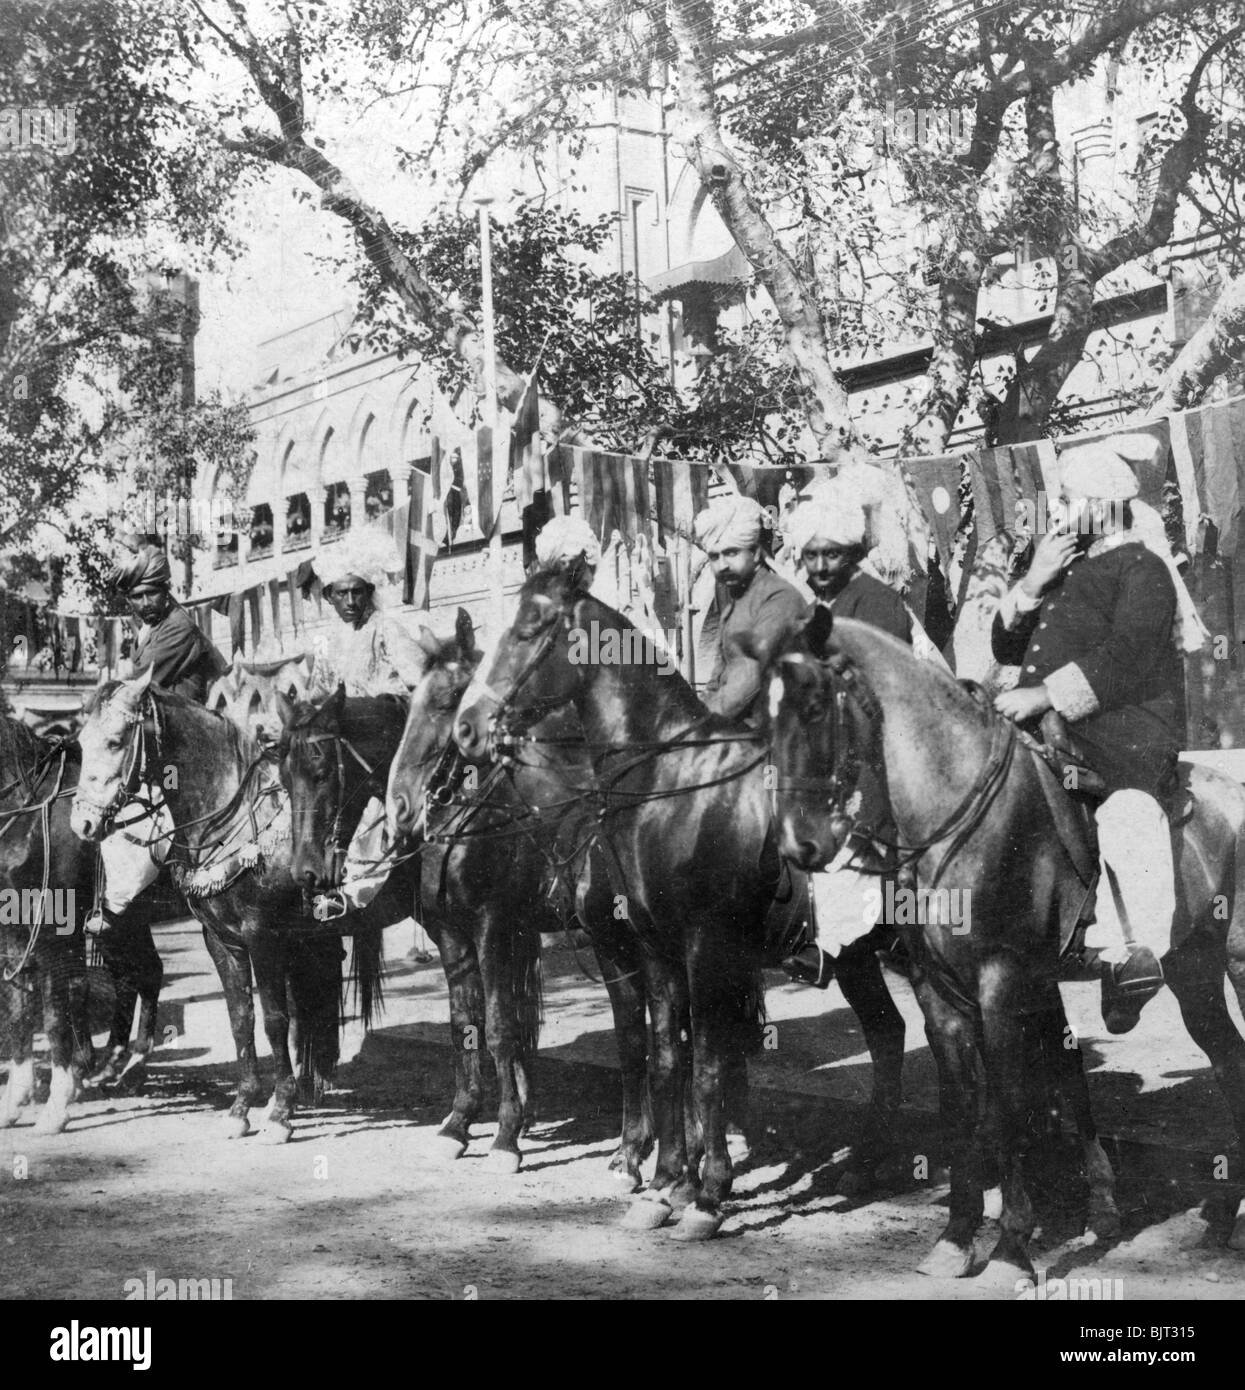 Le punjabi cavaliers en dehors de la gare à Delhi, Inde, des années 1900.Artiste : H Mains & Fils Banque D'Images